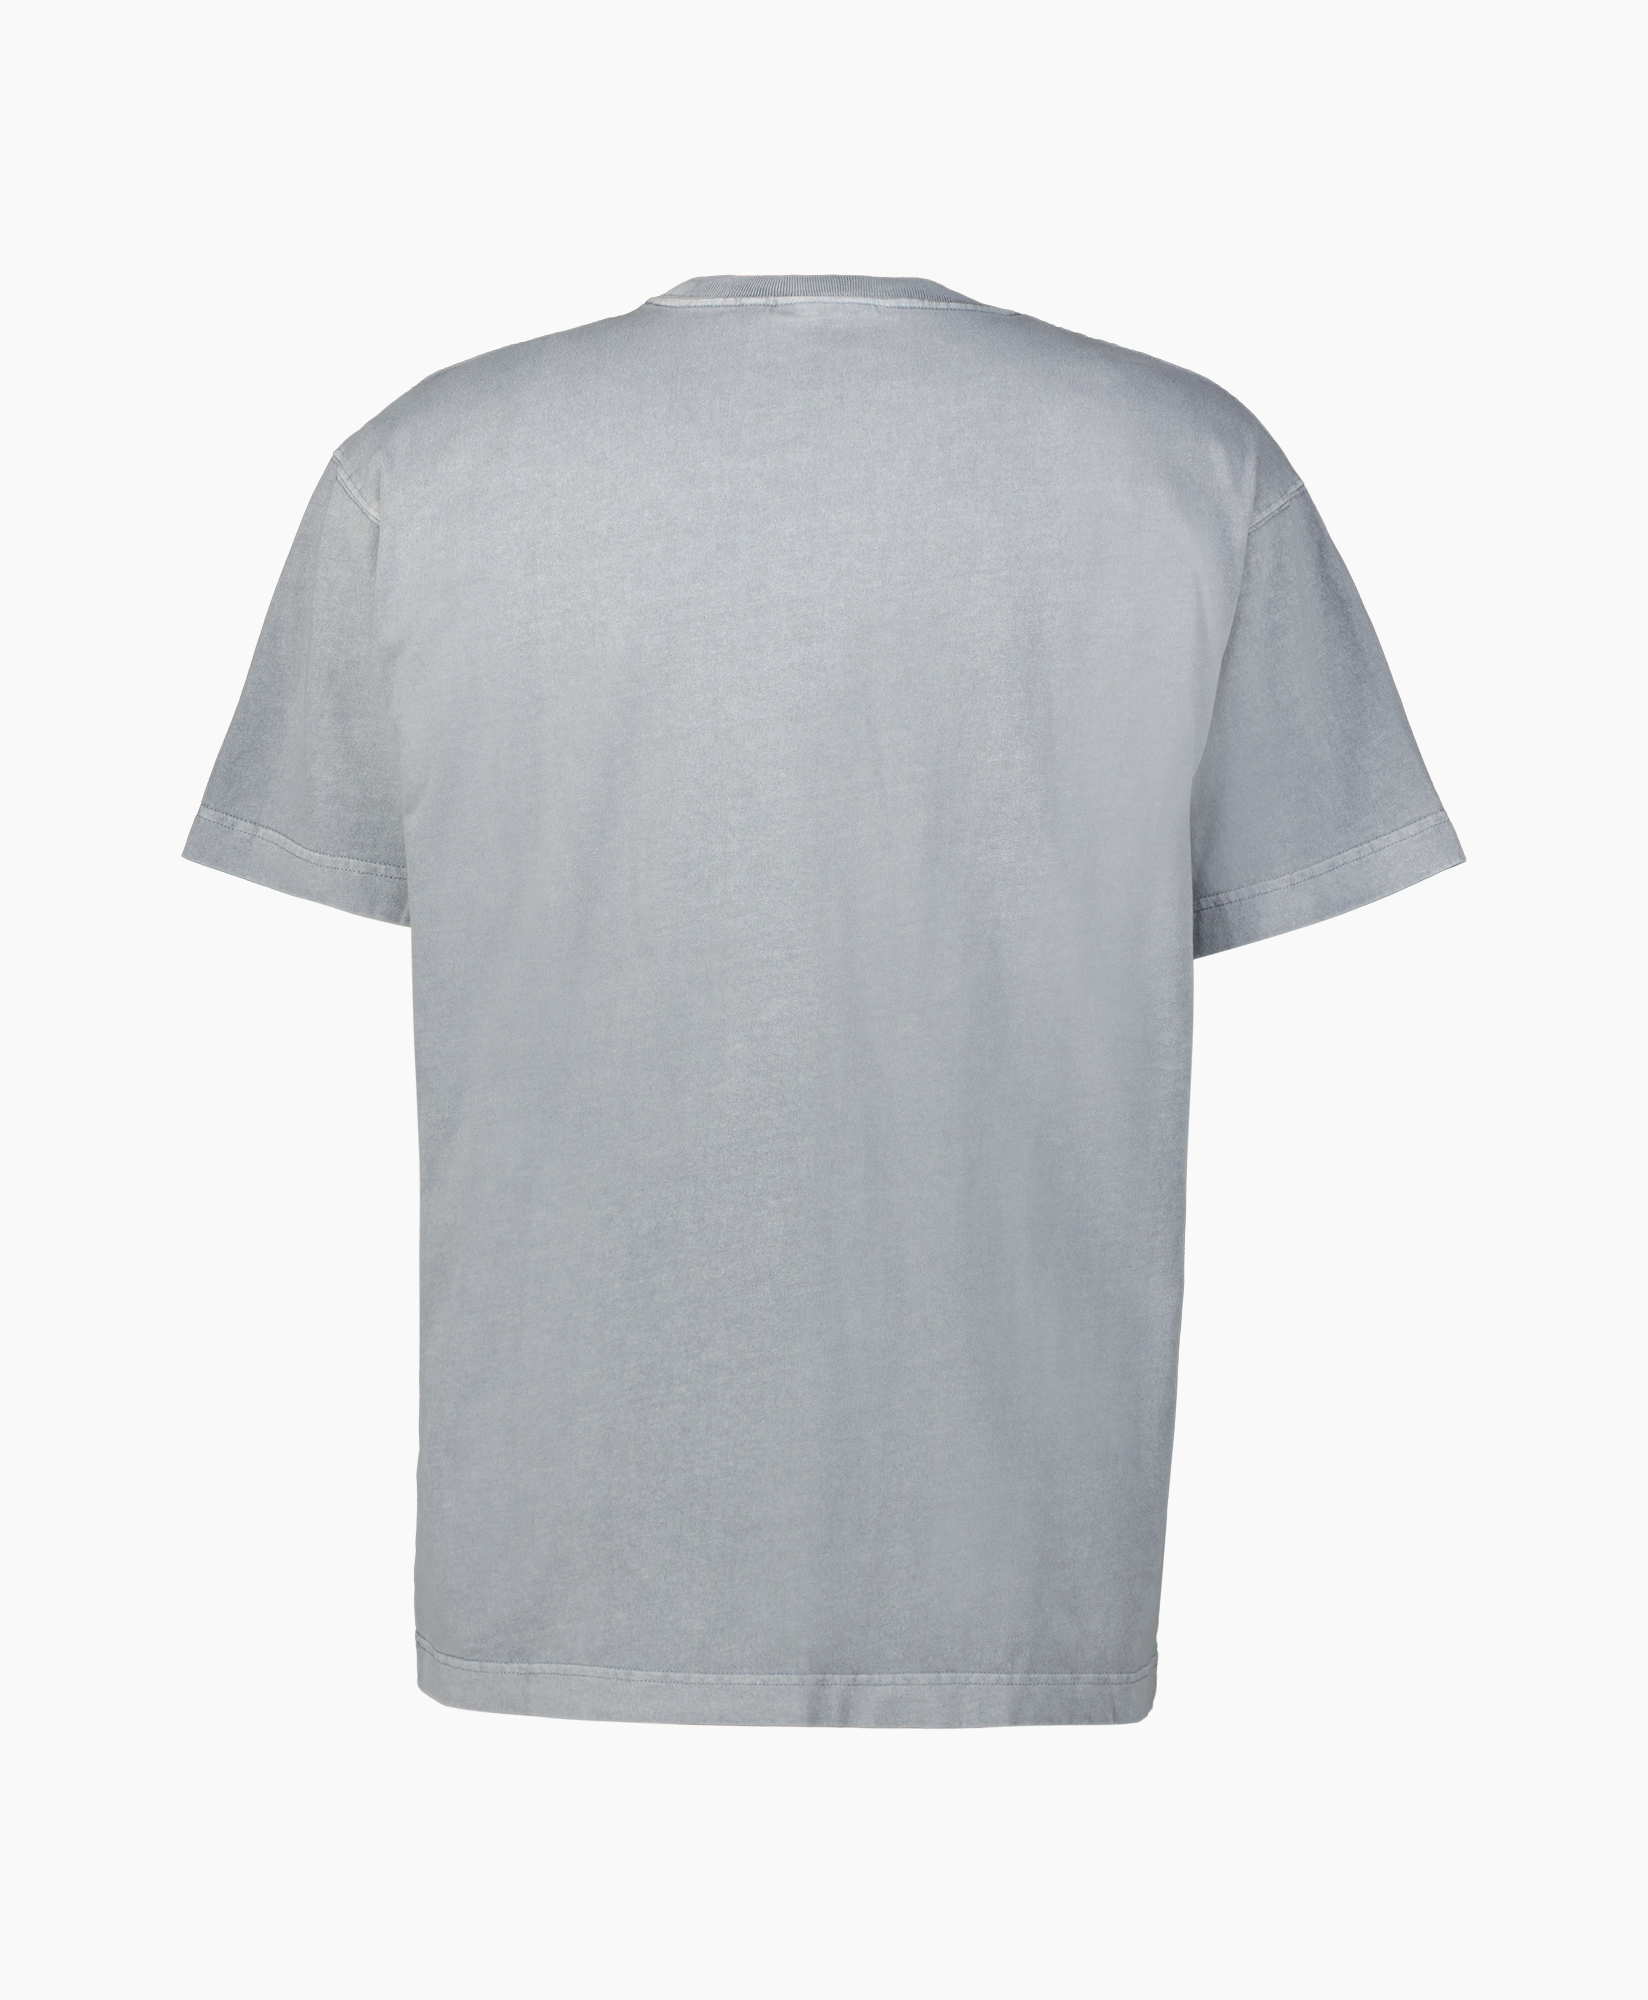 Carhartt Wip T-shirt T-shirt S/s Vista Diversen